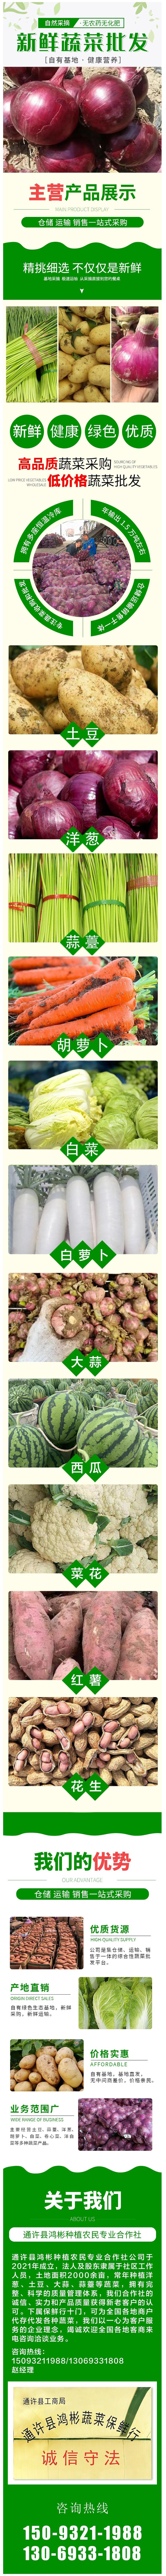 新鲜现摘小辣椒-基地线椒农家种植-应季时令蔬菜出售-10吨起批.jpg